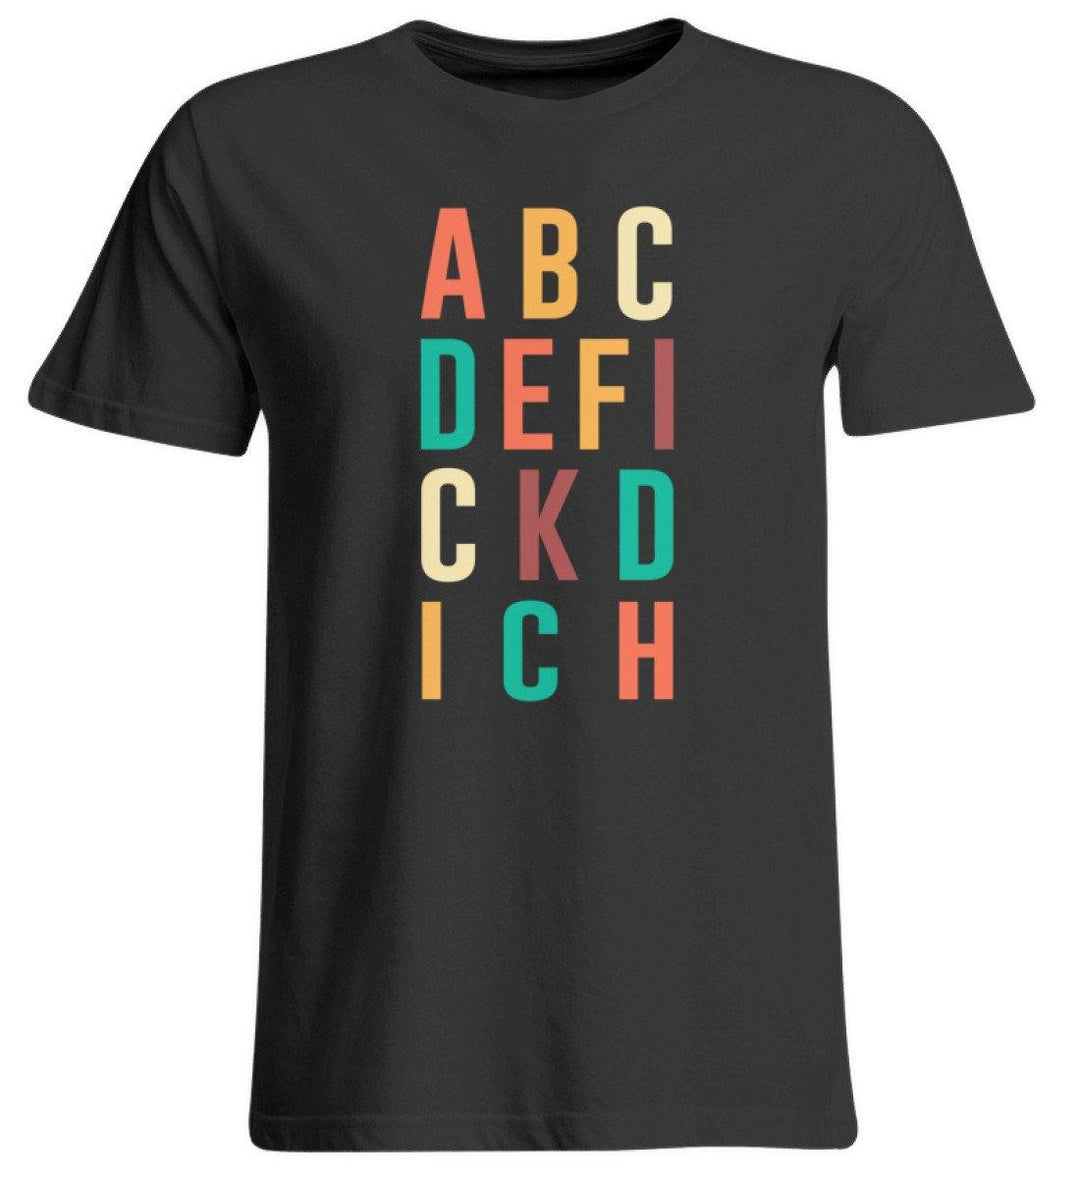 ABCDEFICKDICH - Words on Shirts  - Übergrößenshirt - Words on Shirts Sag es mit dem Mittelfinger Shirts Hoodies Sweatshirt Taschen Gymsack Spruch Sprüche Statement